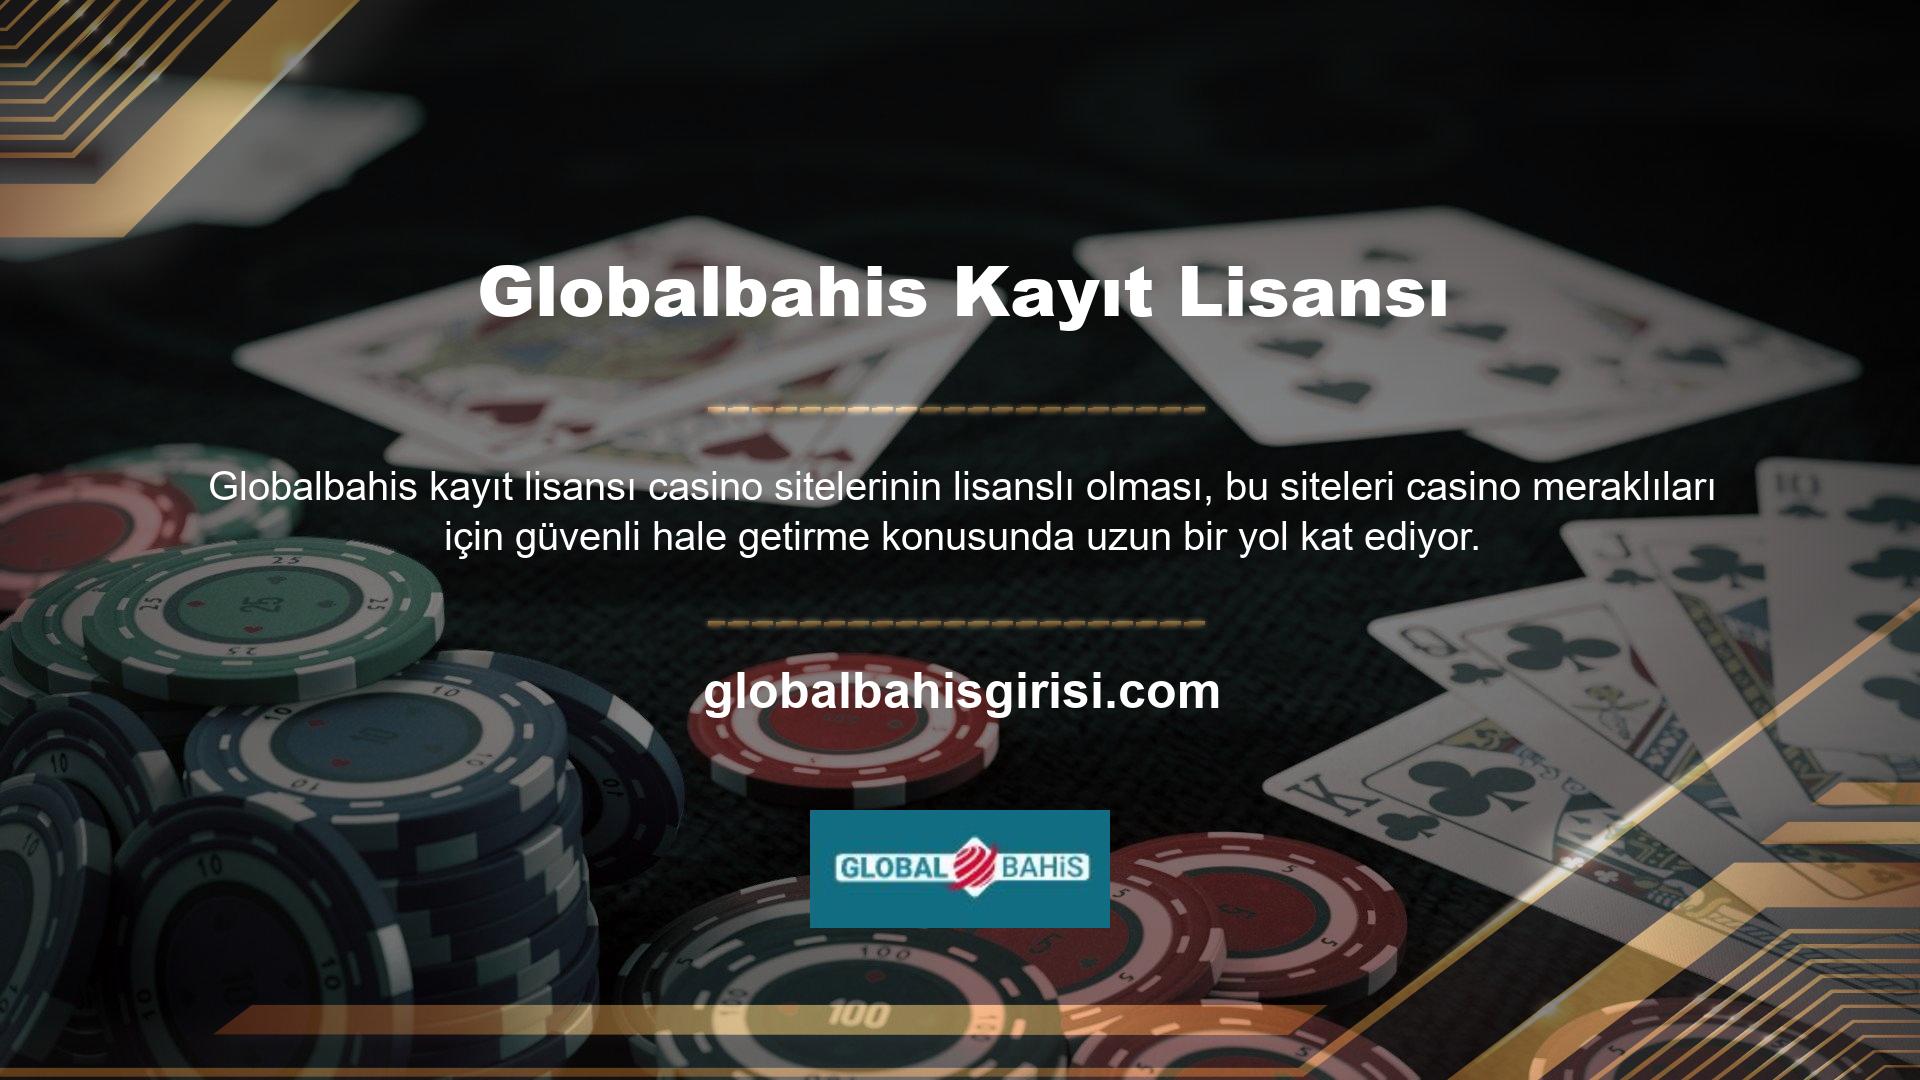 Ülkemizde henüz casino şirketi bulunmadığından Globalbahis lisansları yurt dışından satın alınmaktadır